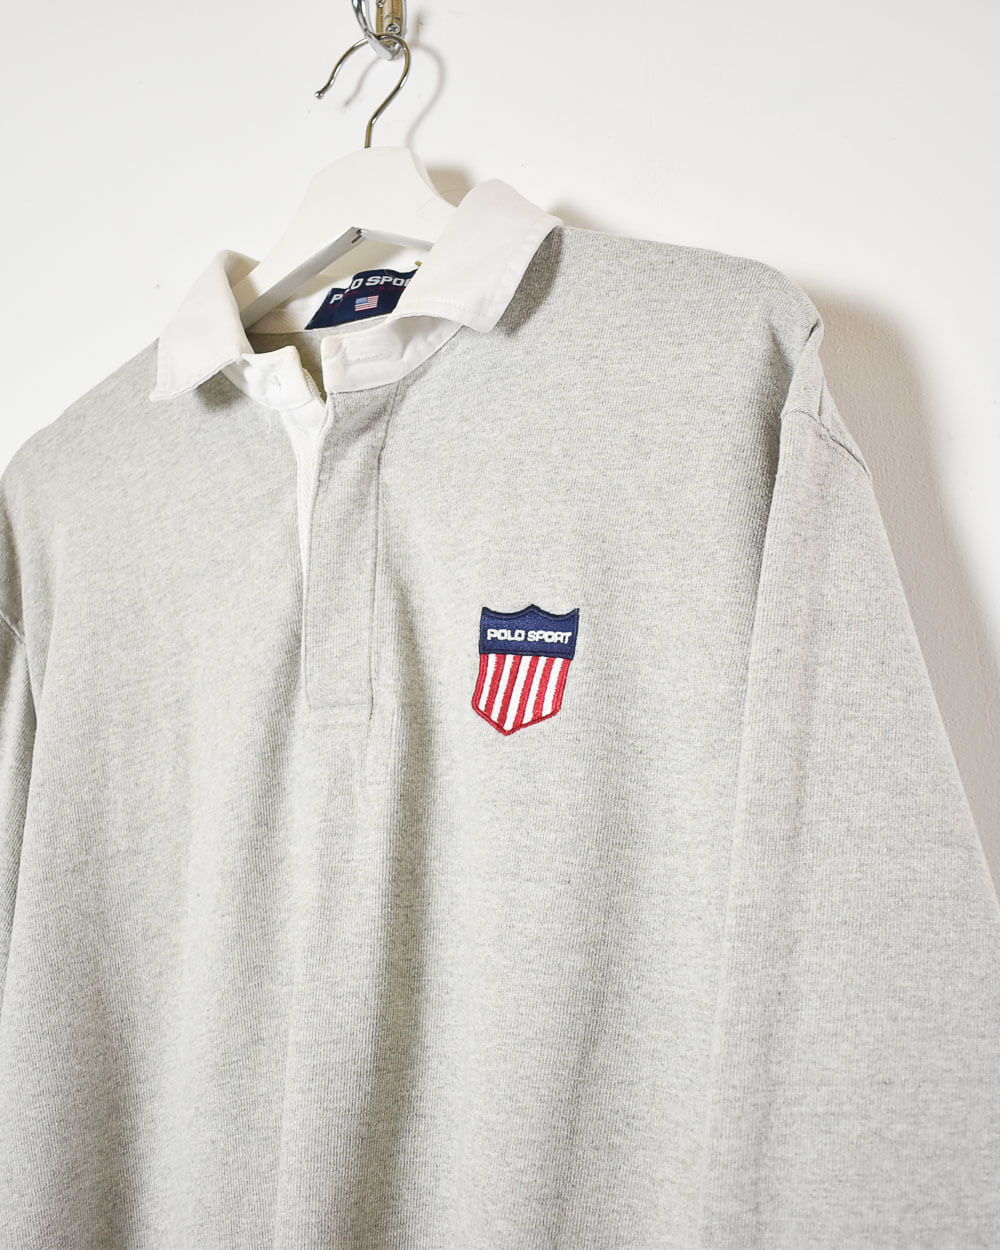 Stone Ralph Lauren Polo Sport Rugby Shirt - Medium